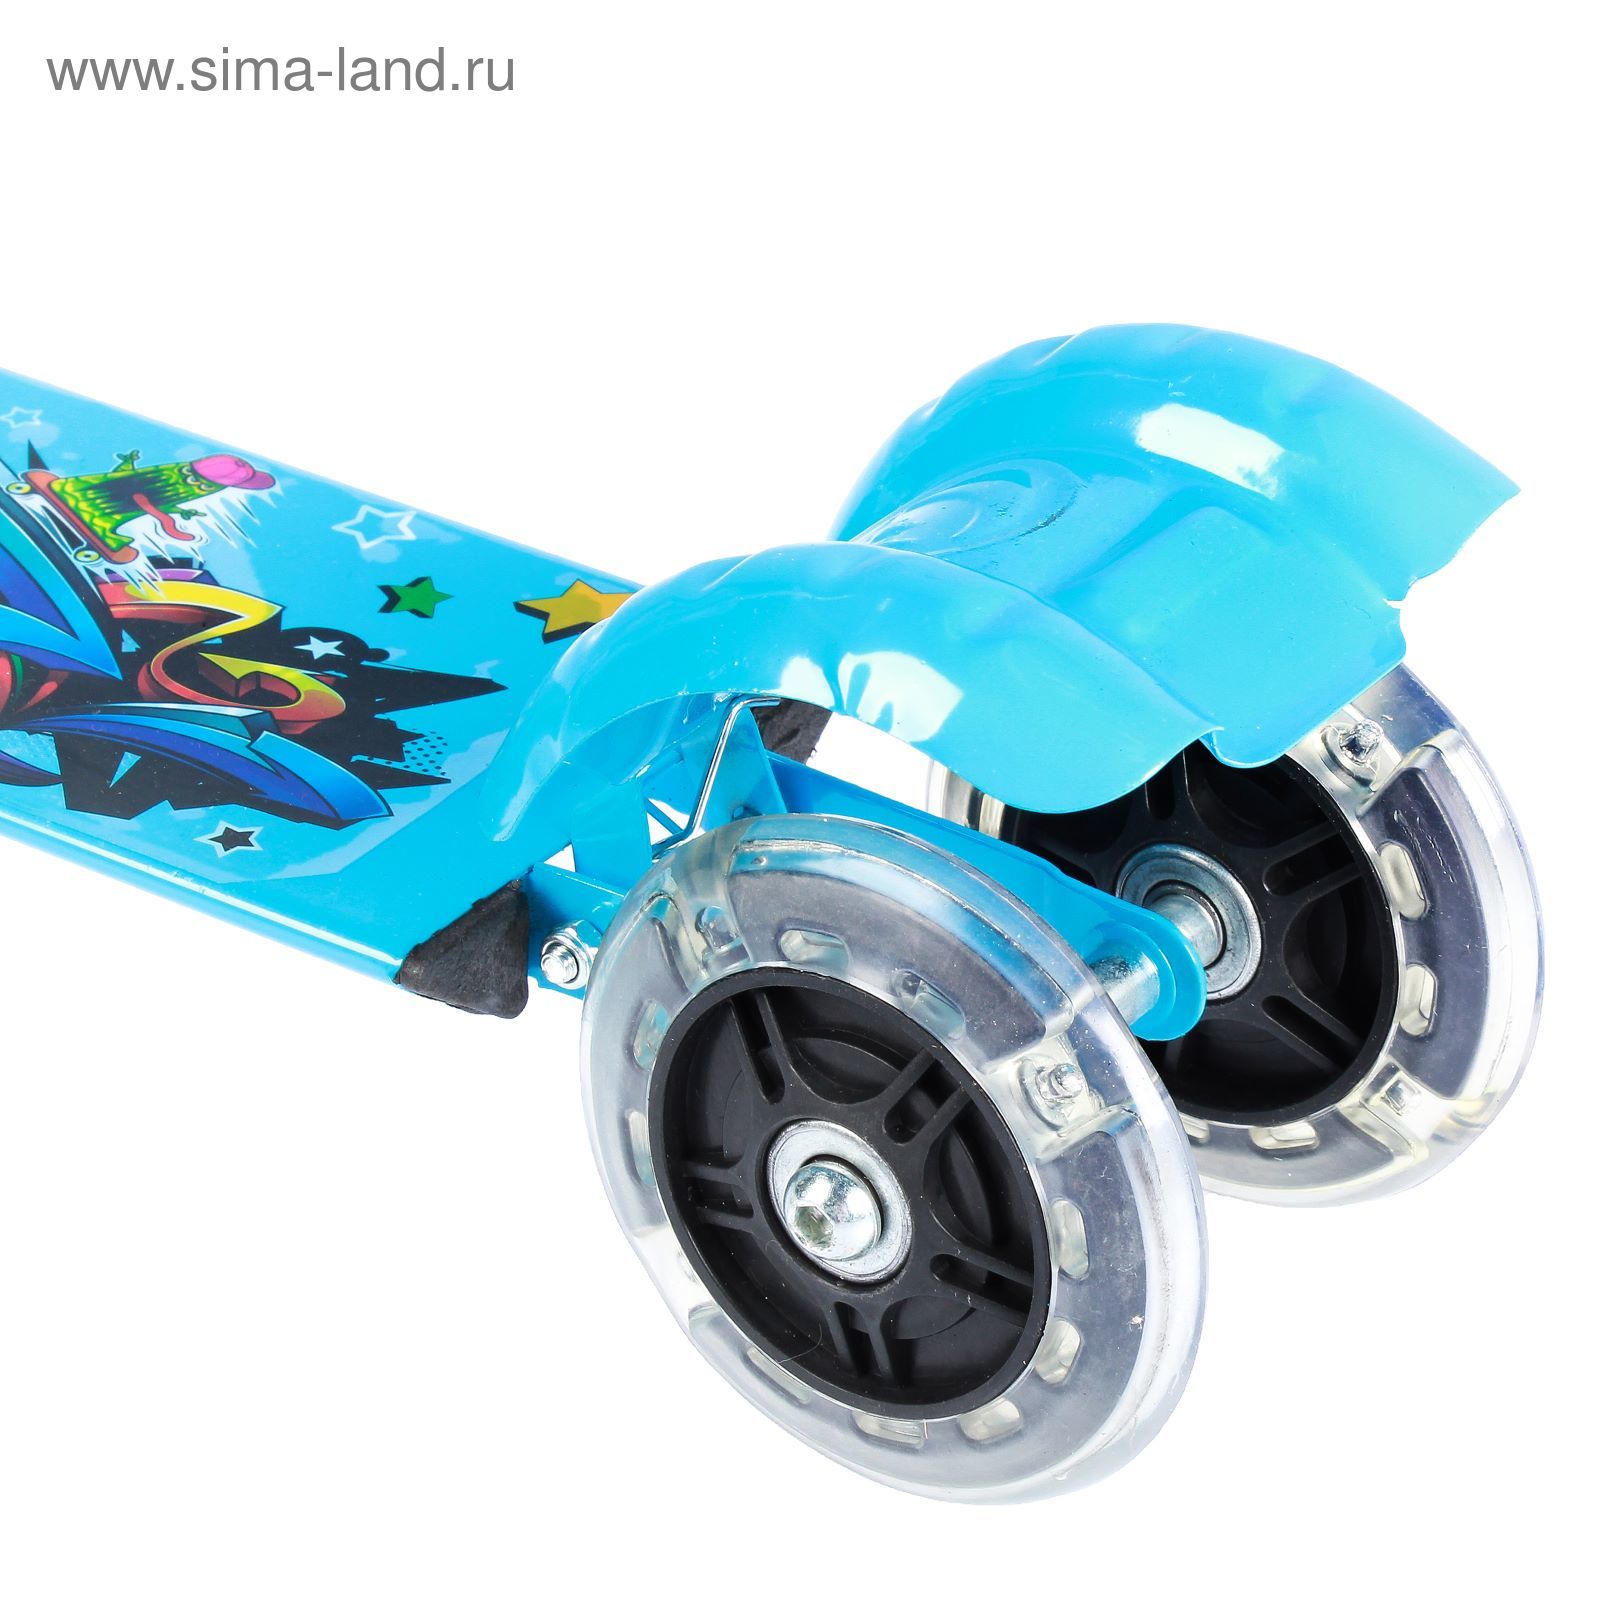 Самокат стальной "Молния" ОТ-508, три колеса PVC d= 100 мм светящиеся, цвет синий